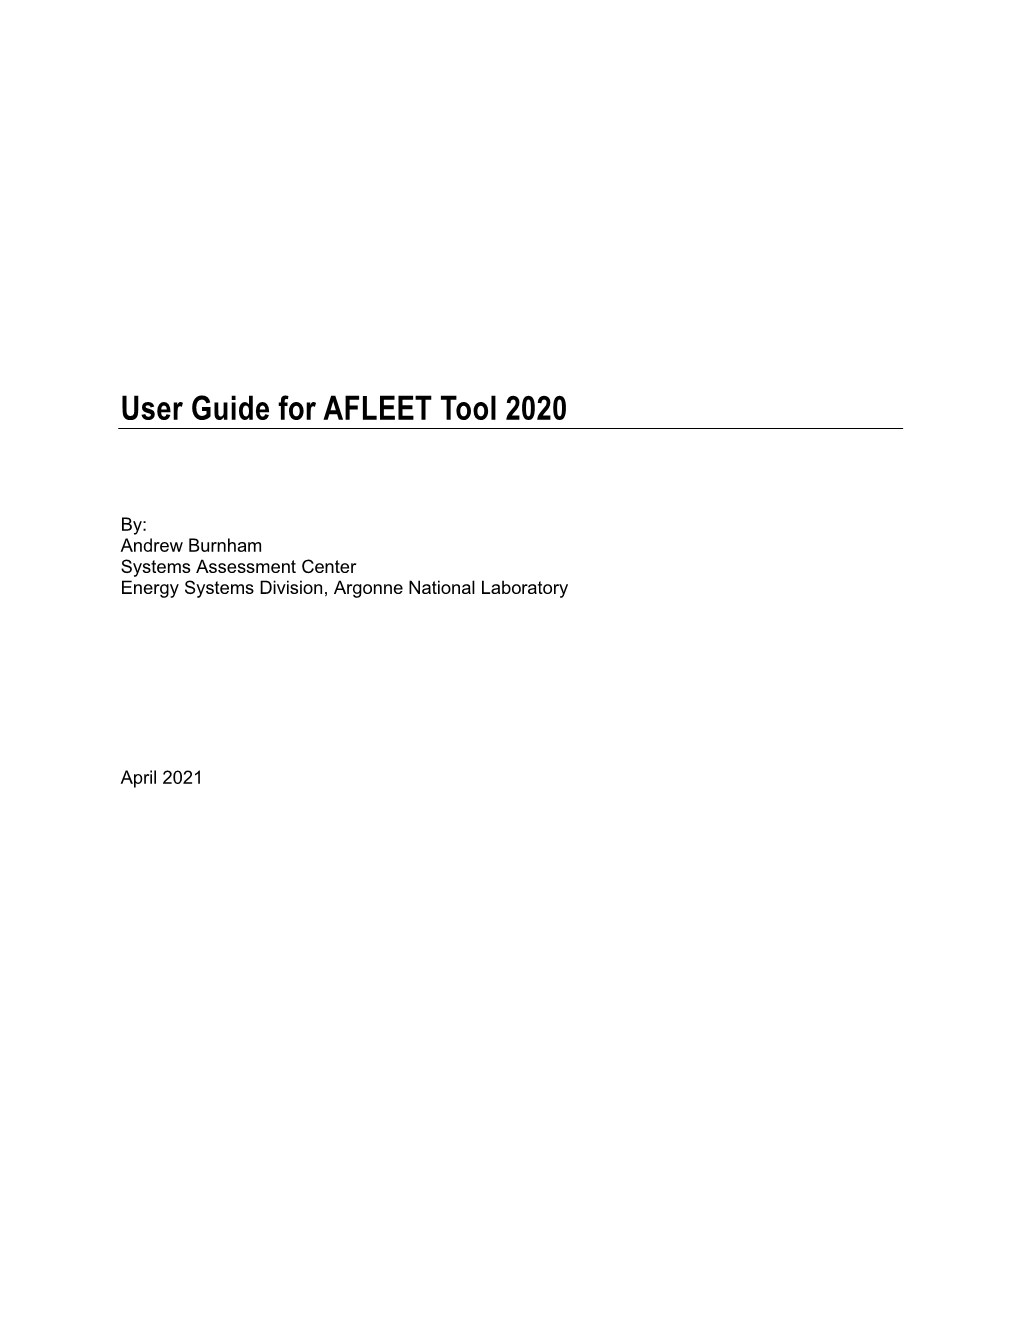 User Guide for AFLEET Tool 2020